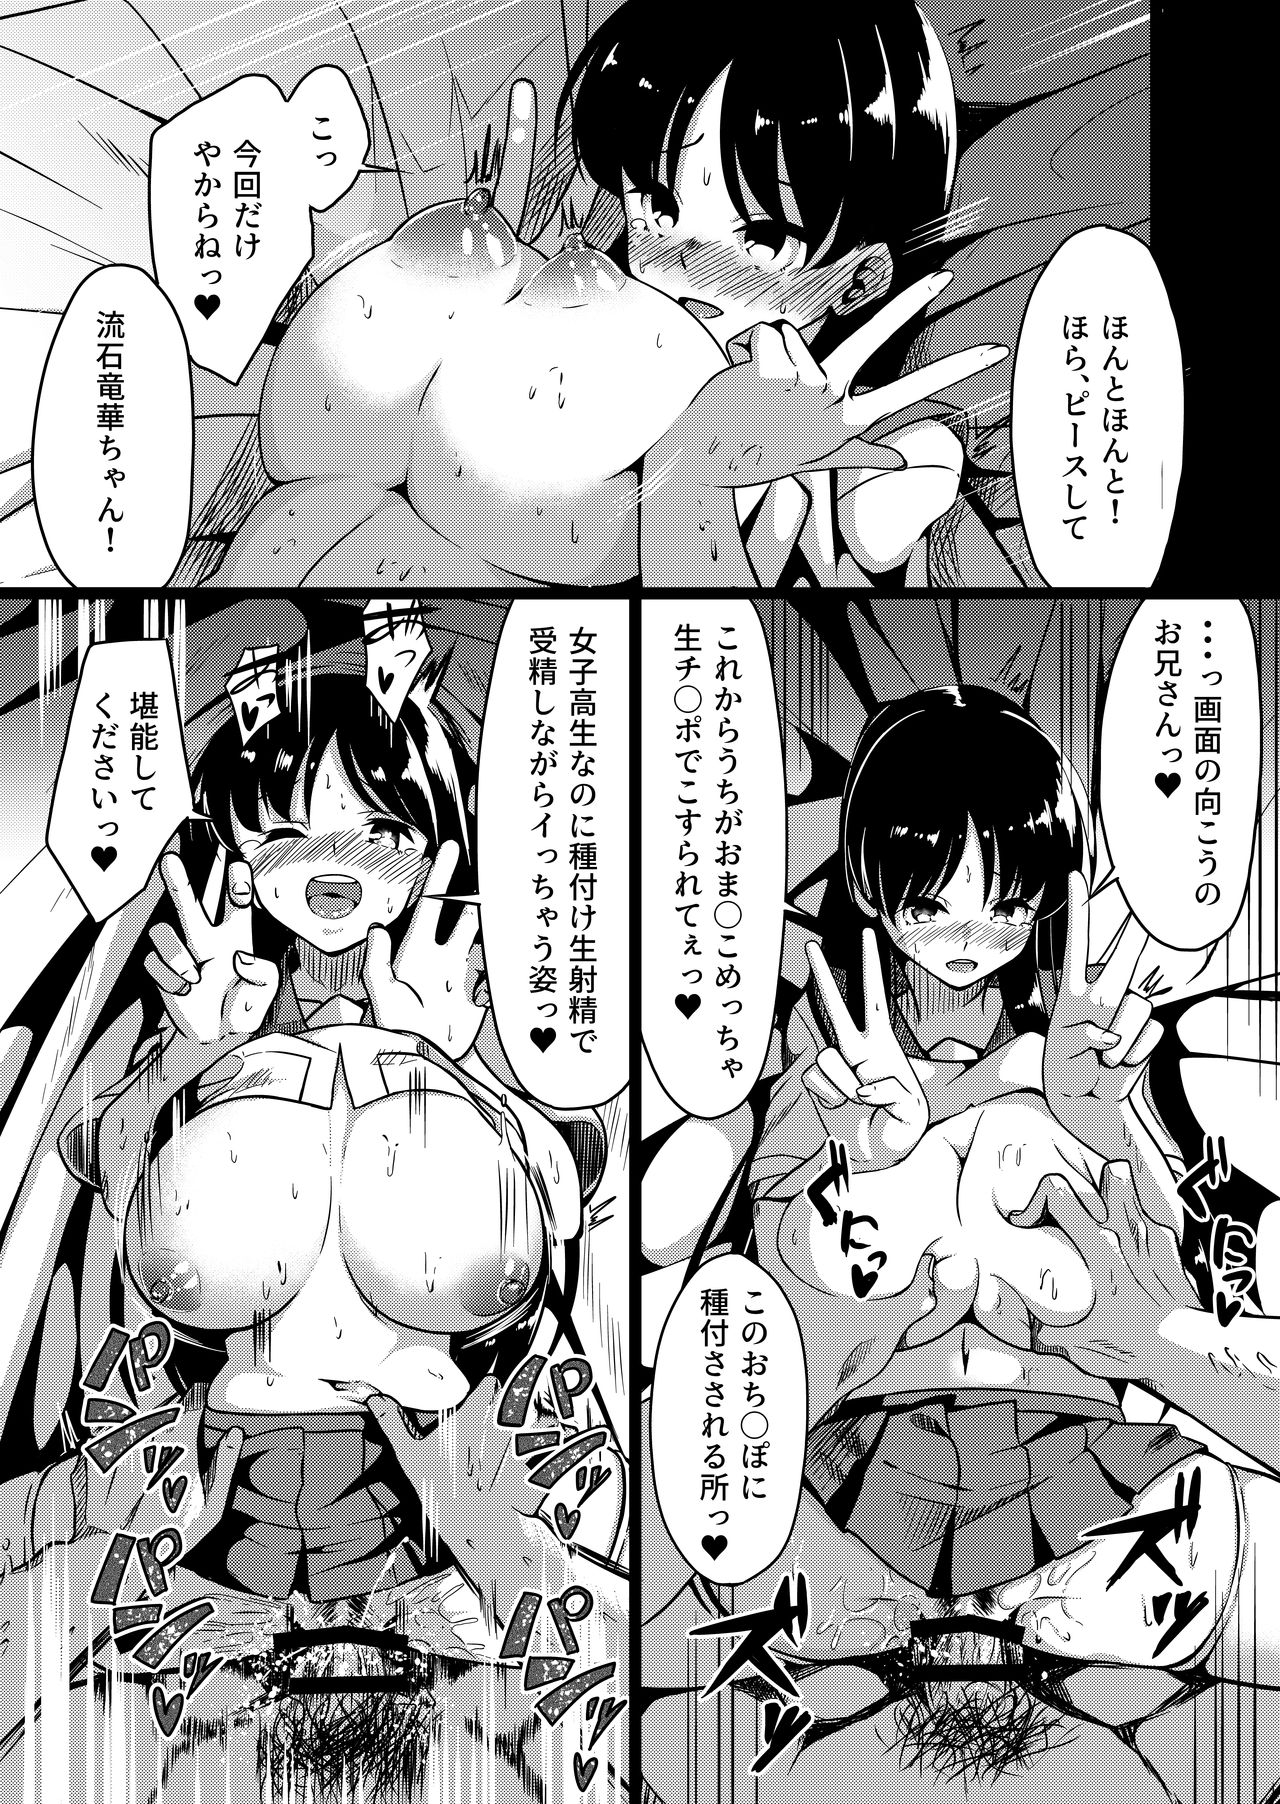 [Miso Oden] Shimizudani Ryuuka no Mijikai Ero Manga (Saki) page 5 full